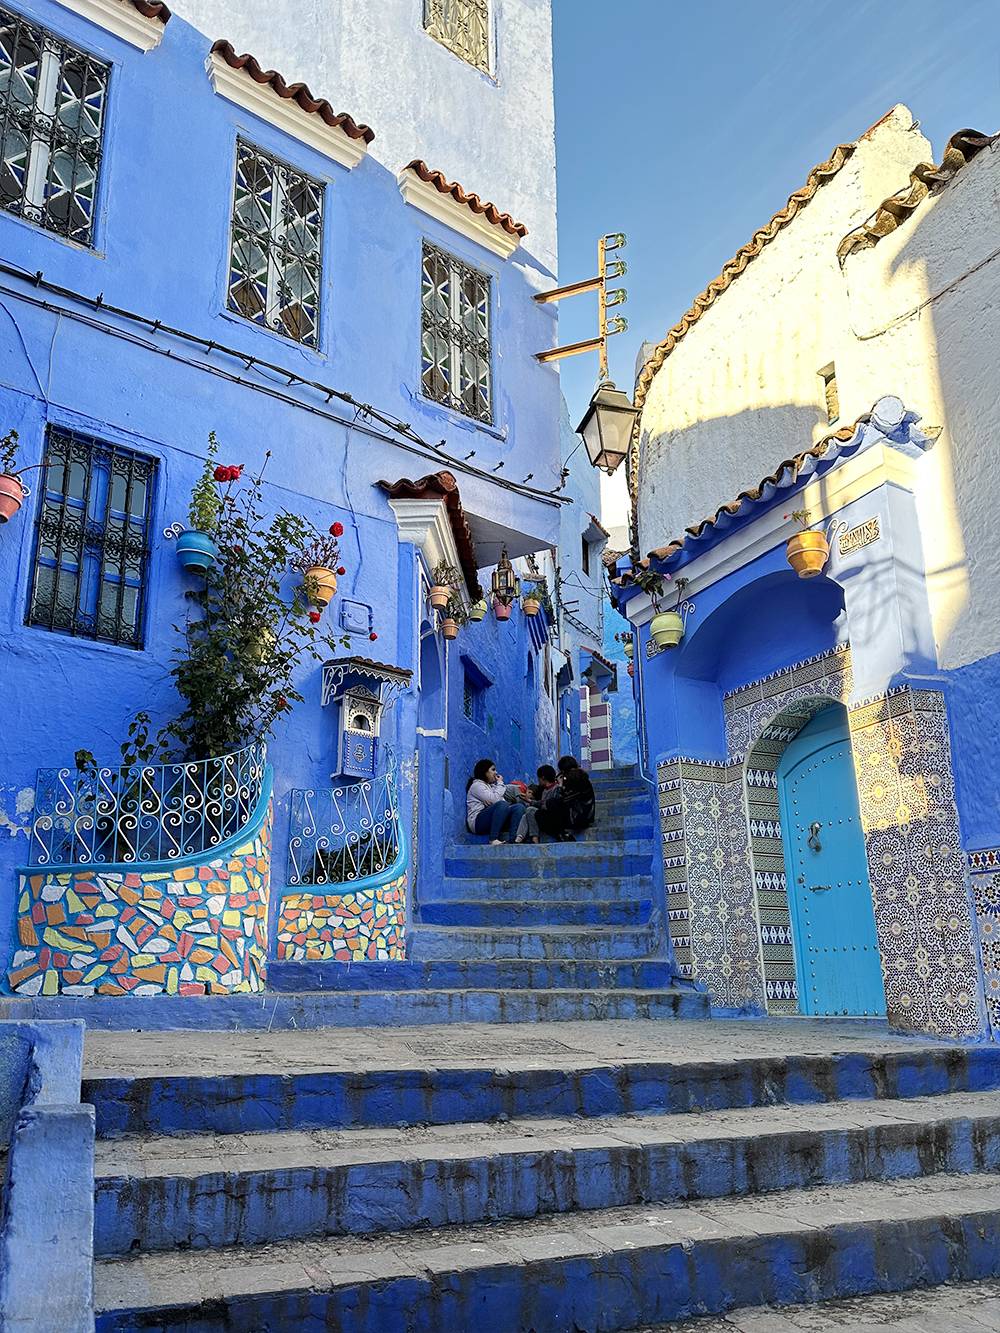 Идея покрасить здания медины в голубой цвет принадлежит евреям, которые жили в городе. Цвет должен был символизировать близость города и его жителей к Богу